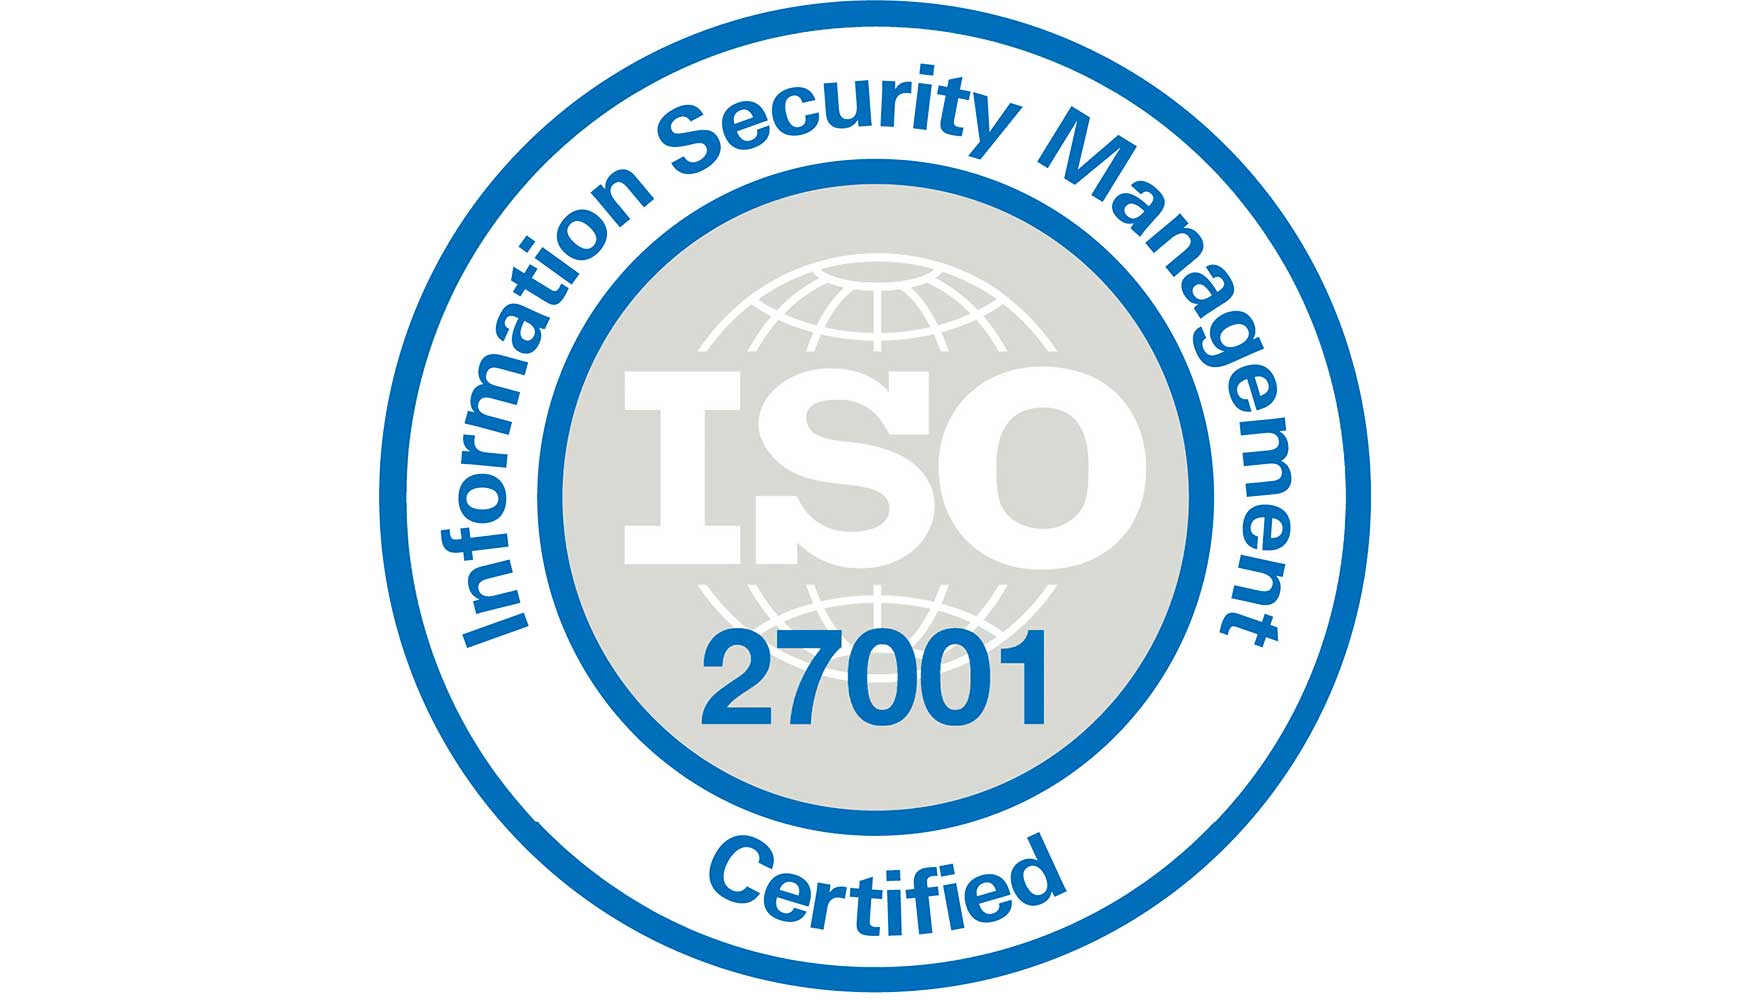 DigiKey ha aadido la certificacin ISO 27001 a sus protocolos de seguridad de la informacin